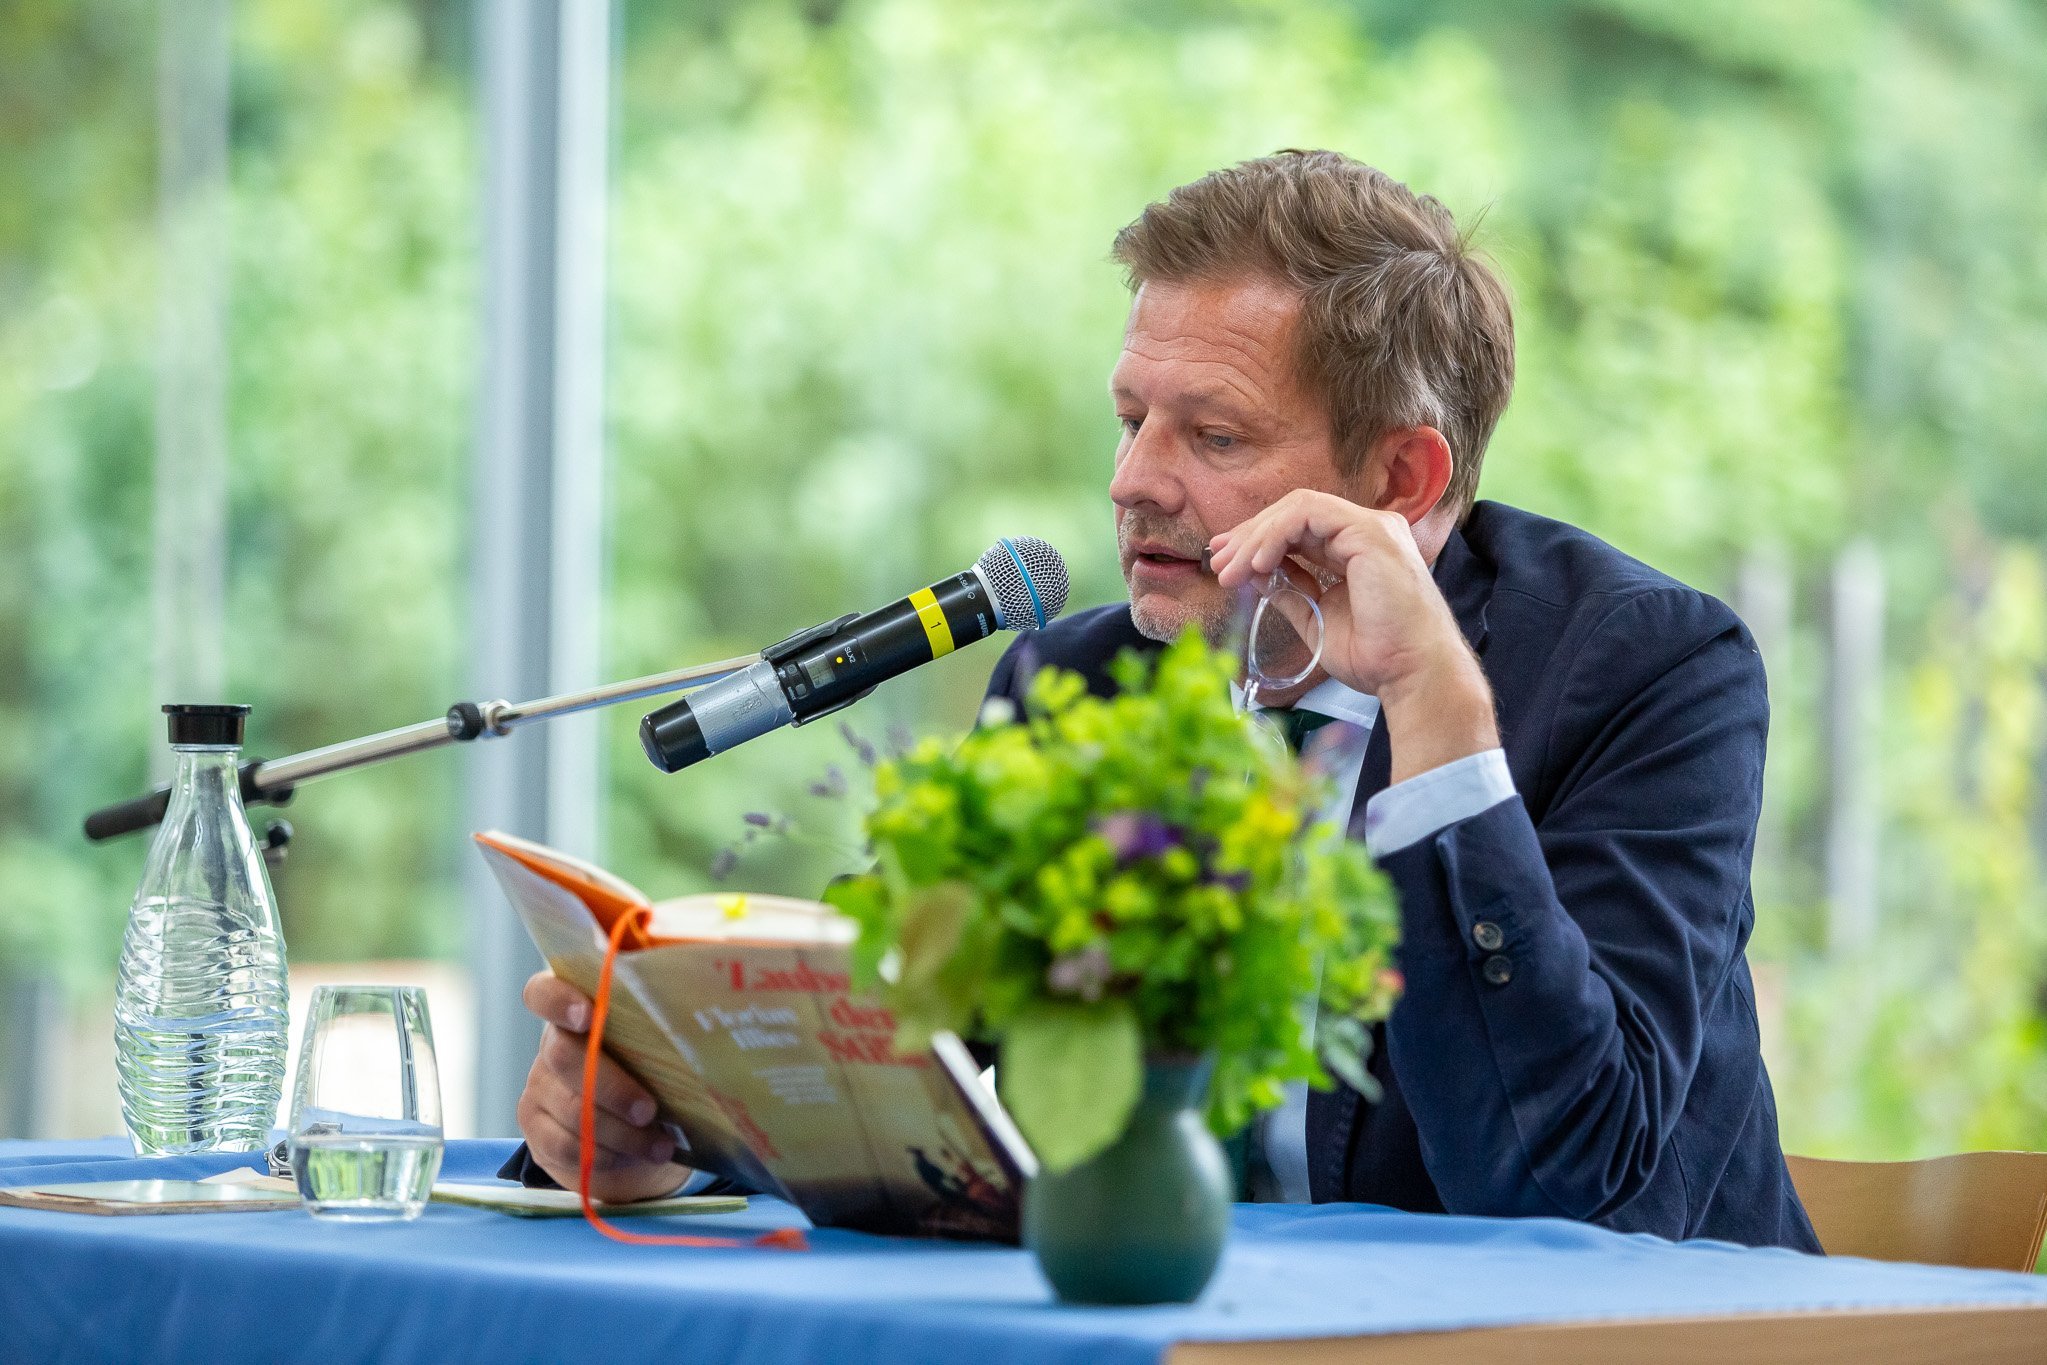 Nahaufnahme von Illies bei der Lesung: Autor mit Mikrofon, Buch, auf dem Tisch vorn Blumen, hinten Wasser.